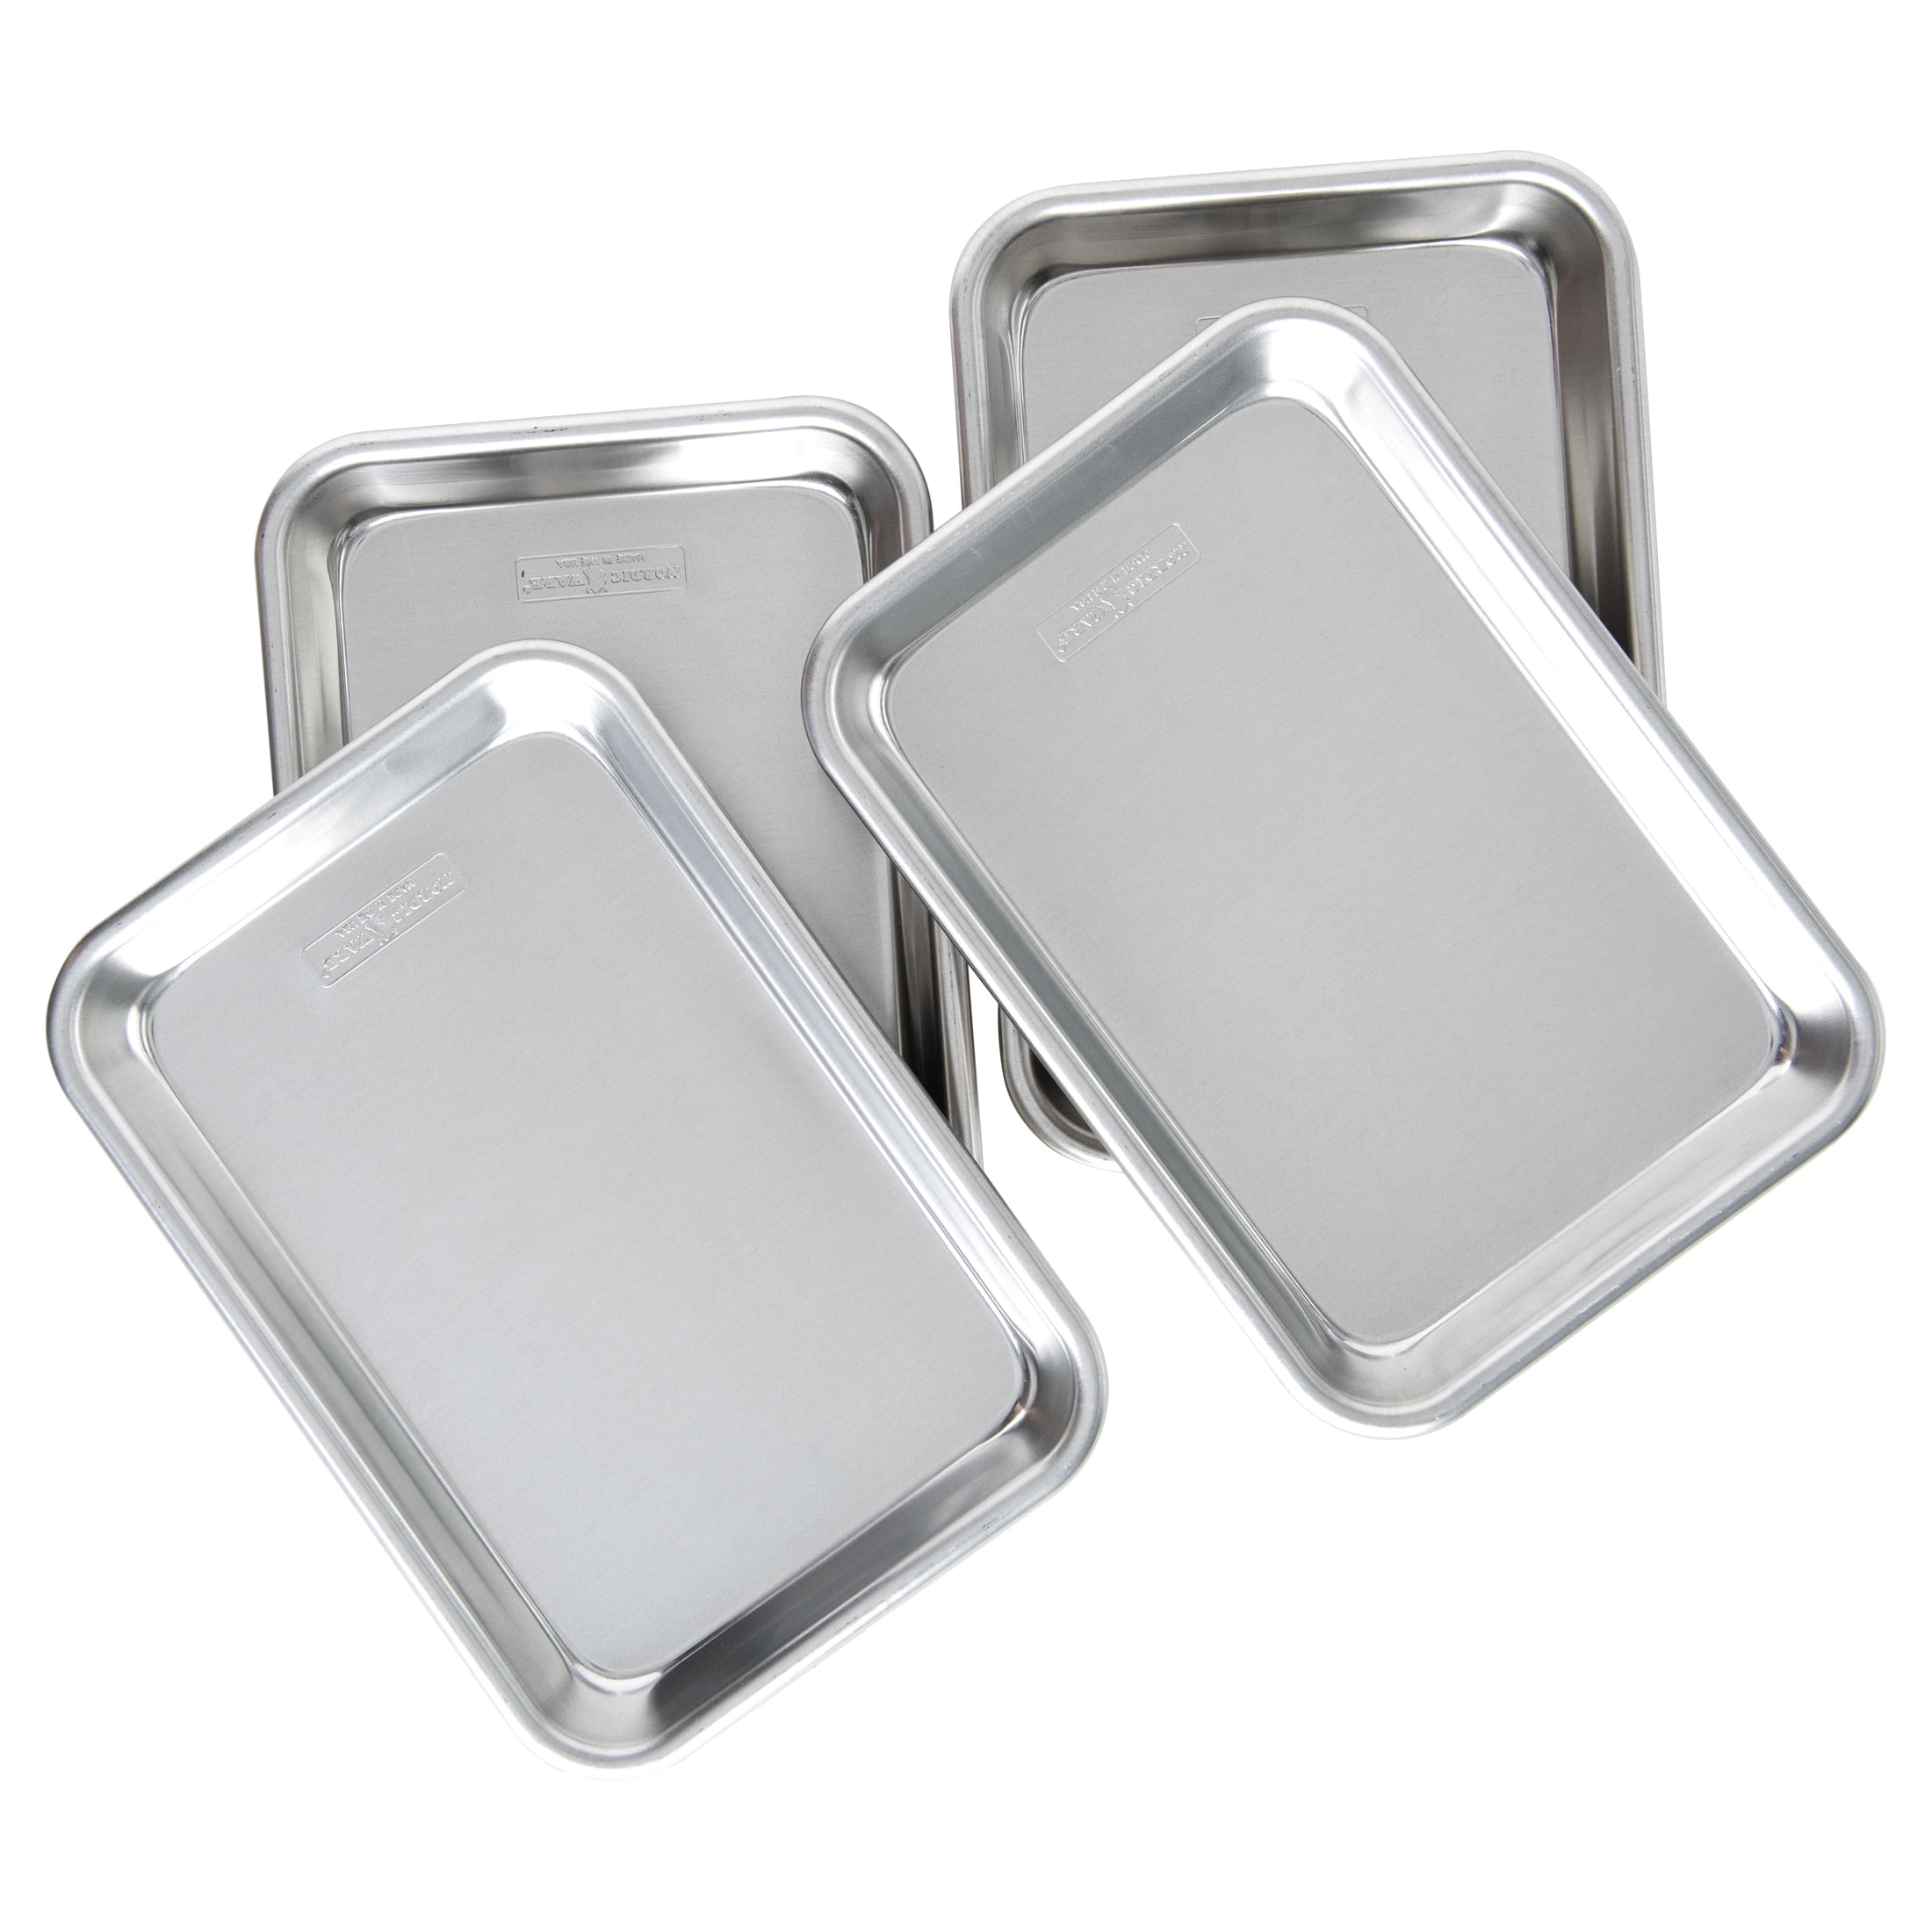 Nordic Ware Naturals Aluminum Quarter Sheets, 3 Pack, Silver, 12.1 x 8.8  x 1.1